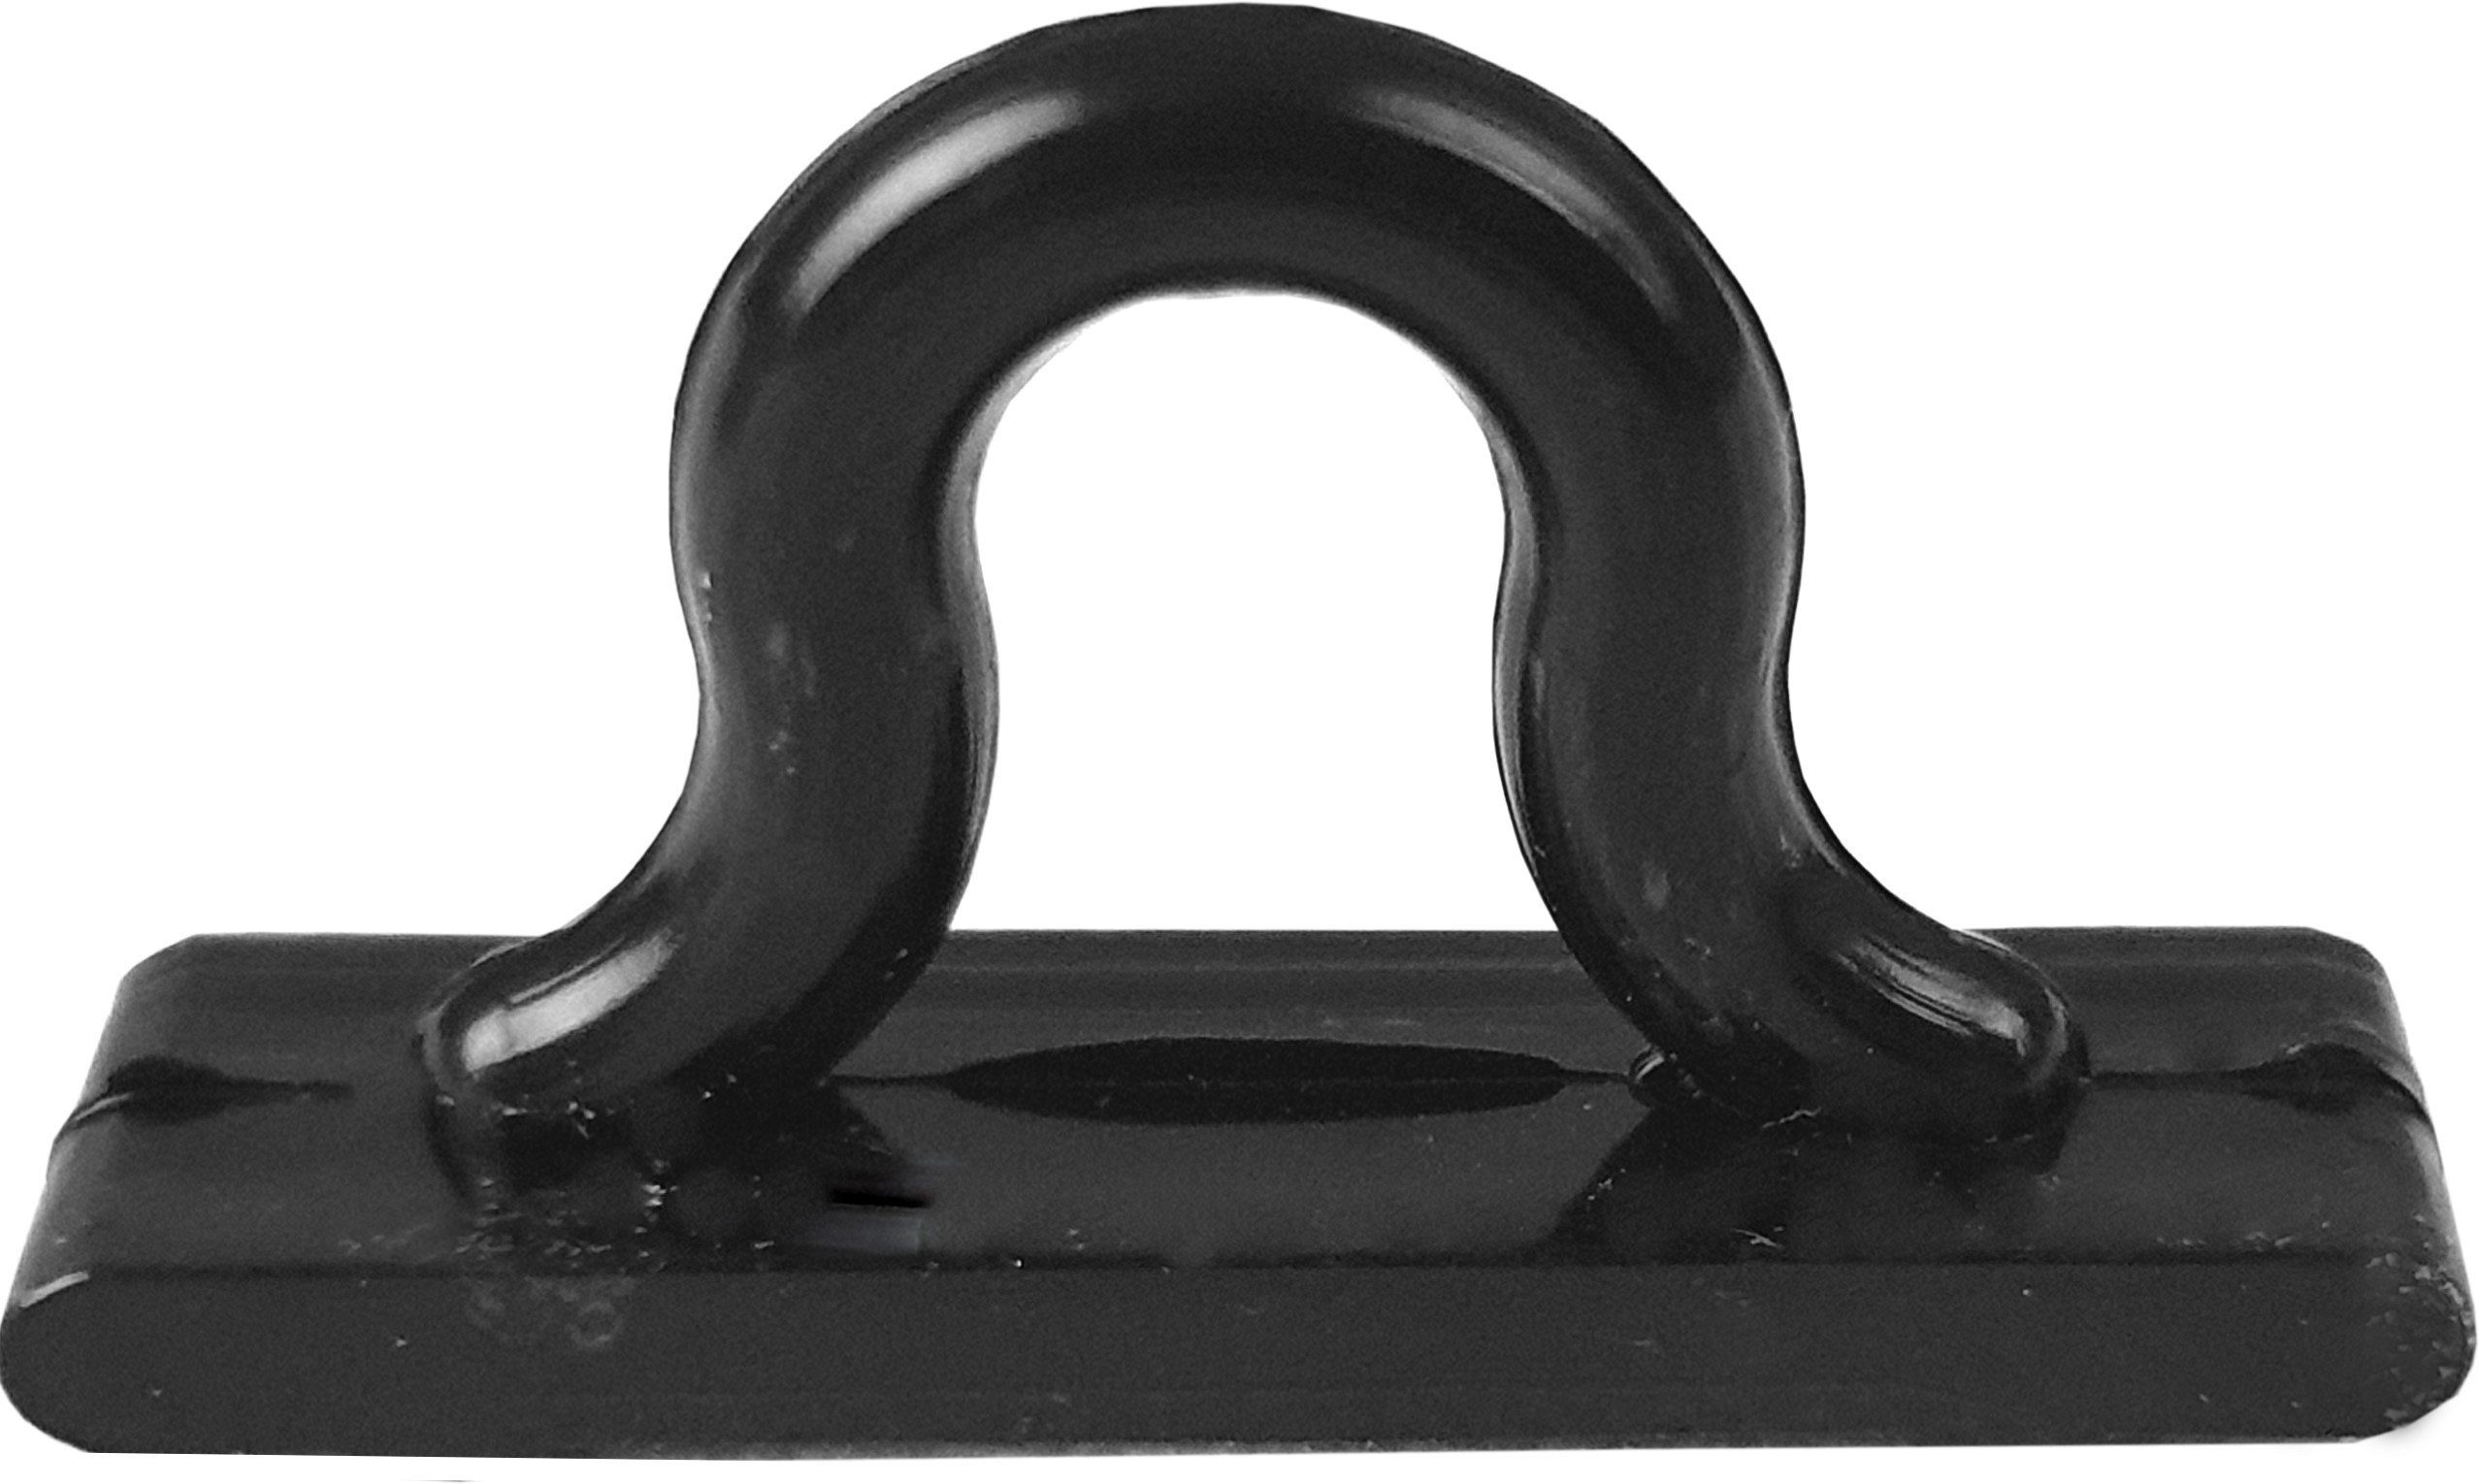 Türvorhang Flauschi, Arsvita, Ösen Unistreifen St), schwarz, (1 160x185 in Farben Flauschvorhang viele cm